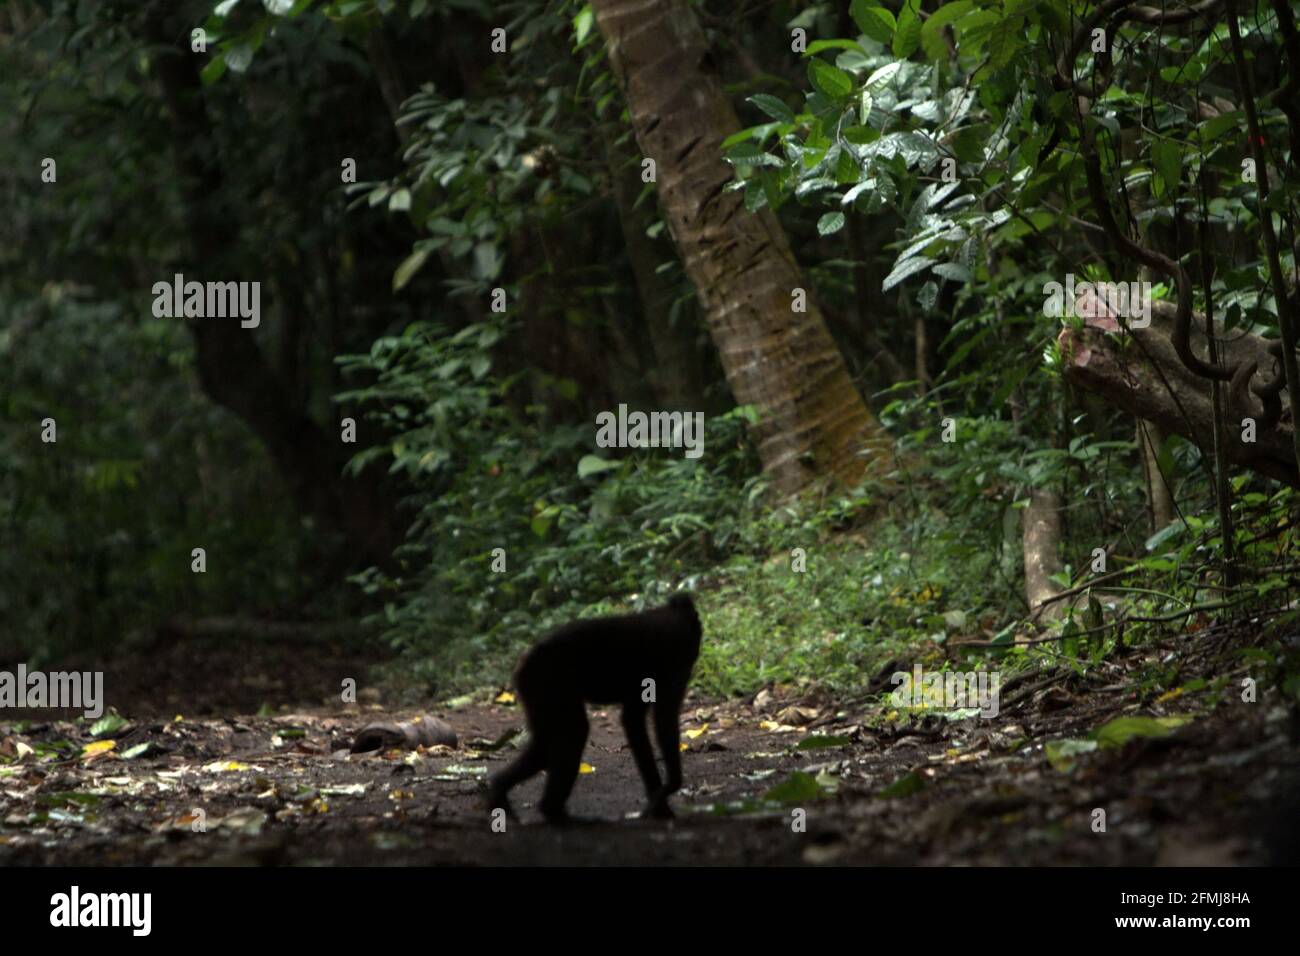 Macaco crestato vagare su un sentiero forestale. Secondo gli scienziati primati, la scimmia endemica di Sulawesi trascorre più del 60% del loro giorno a terra piuttosto che sugli alberi. Foto Stock